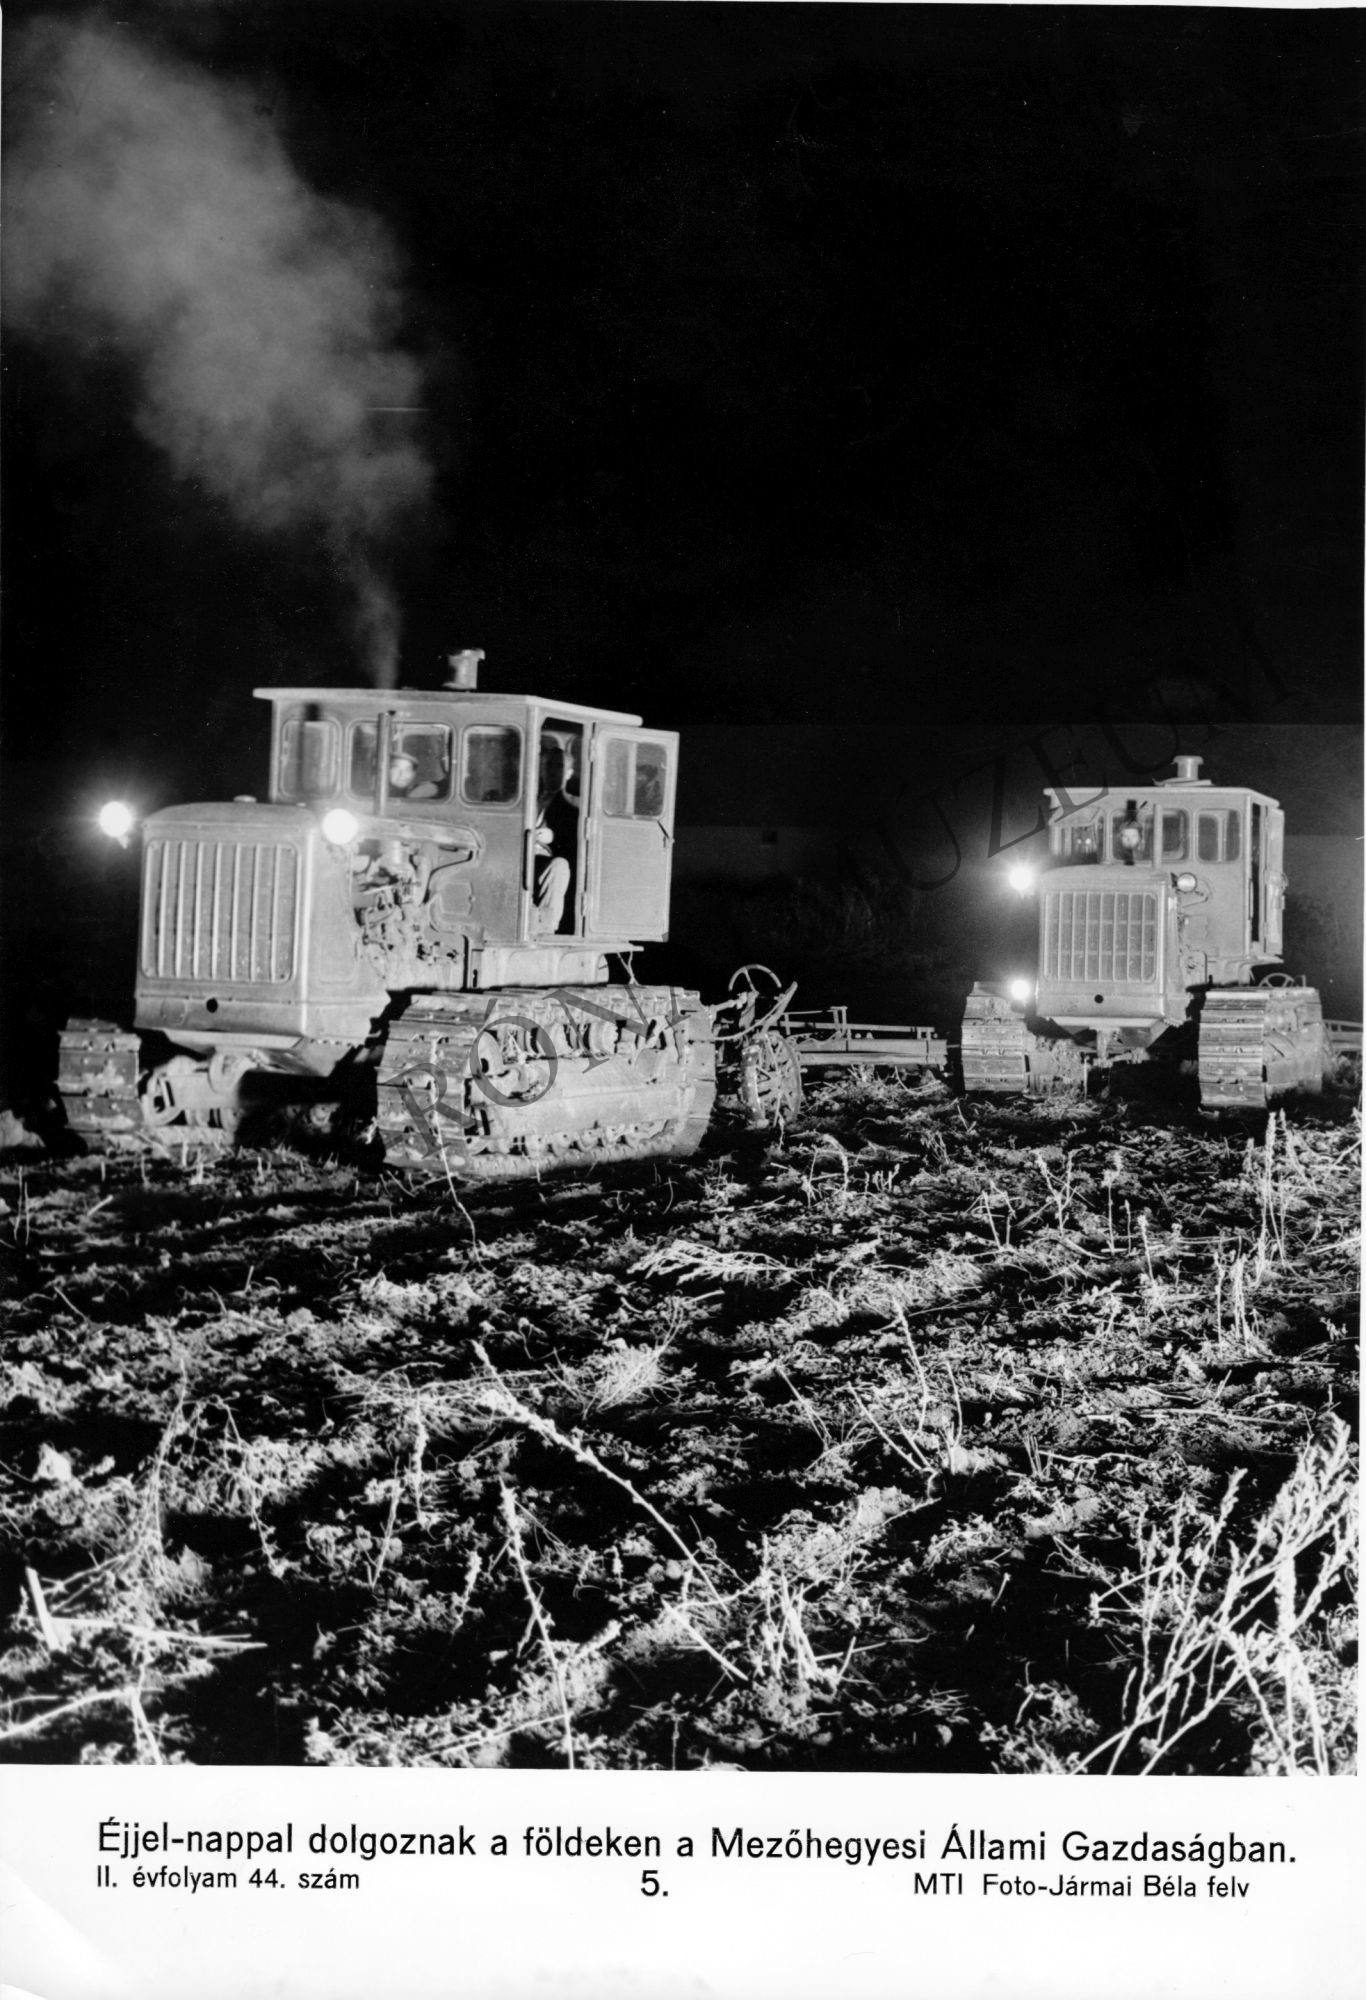 Lánctalpas traktorok éjszaka dolgoznak a Mezőhegyesi Állami Gazdaságban (Rippl-Rónai Múzeum CC BY-NC-SA)